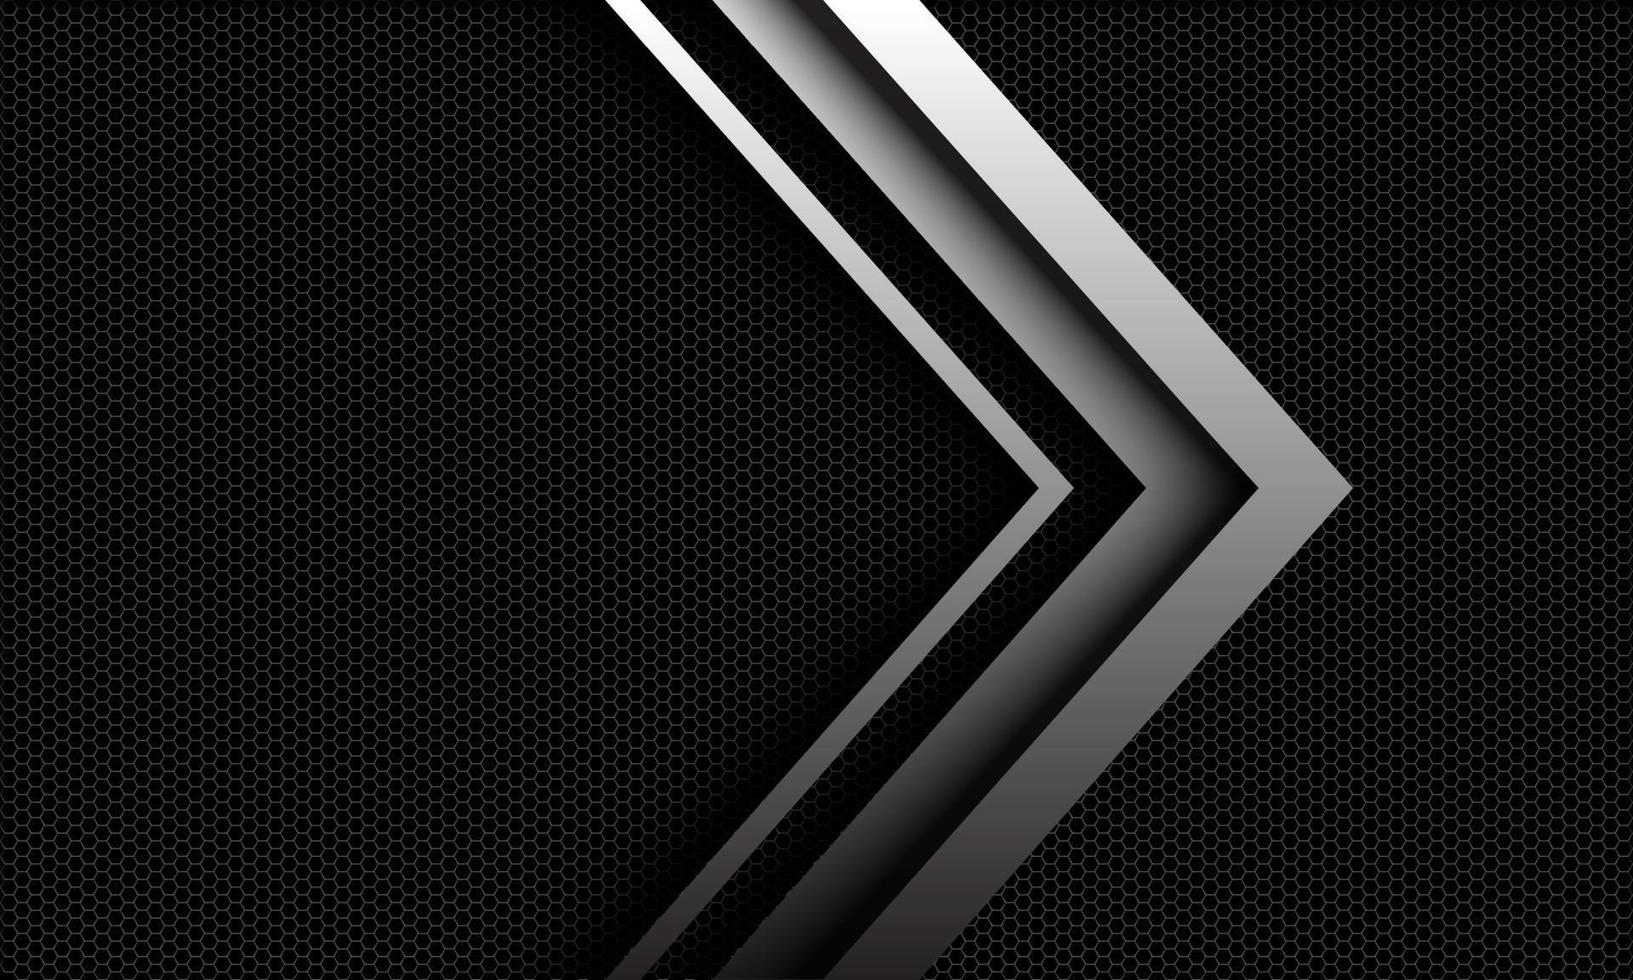 La dirección de la flecha de plata del vector abstracto se superpone en el patrón de malla hexagonal metálico oscuro con diseño de espacio en blanco ilustración de fondo de estilo futurista de lujo moderno.